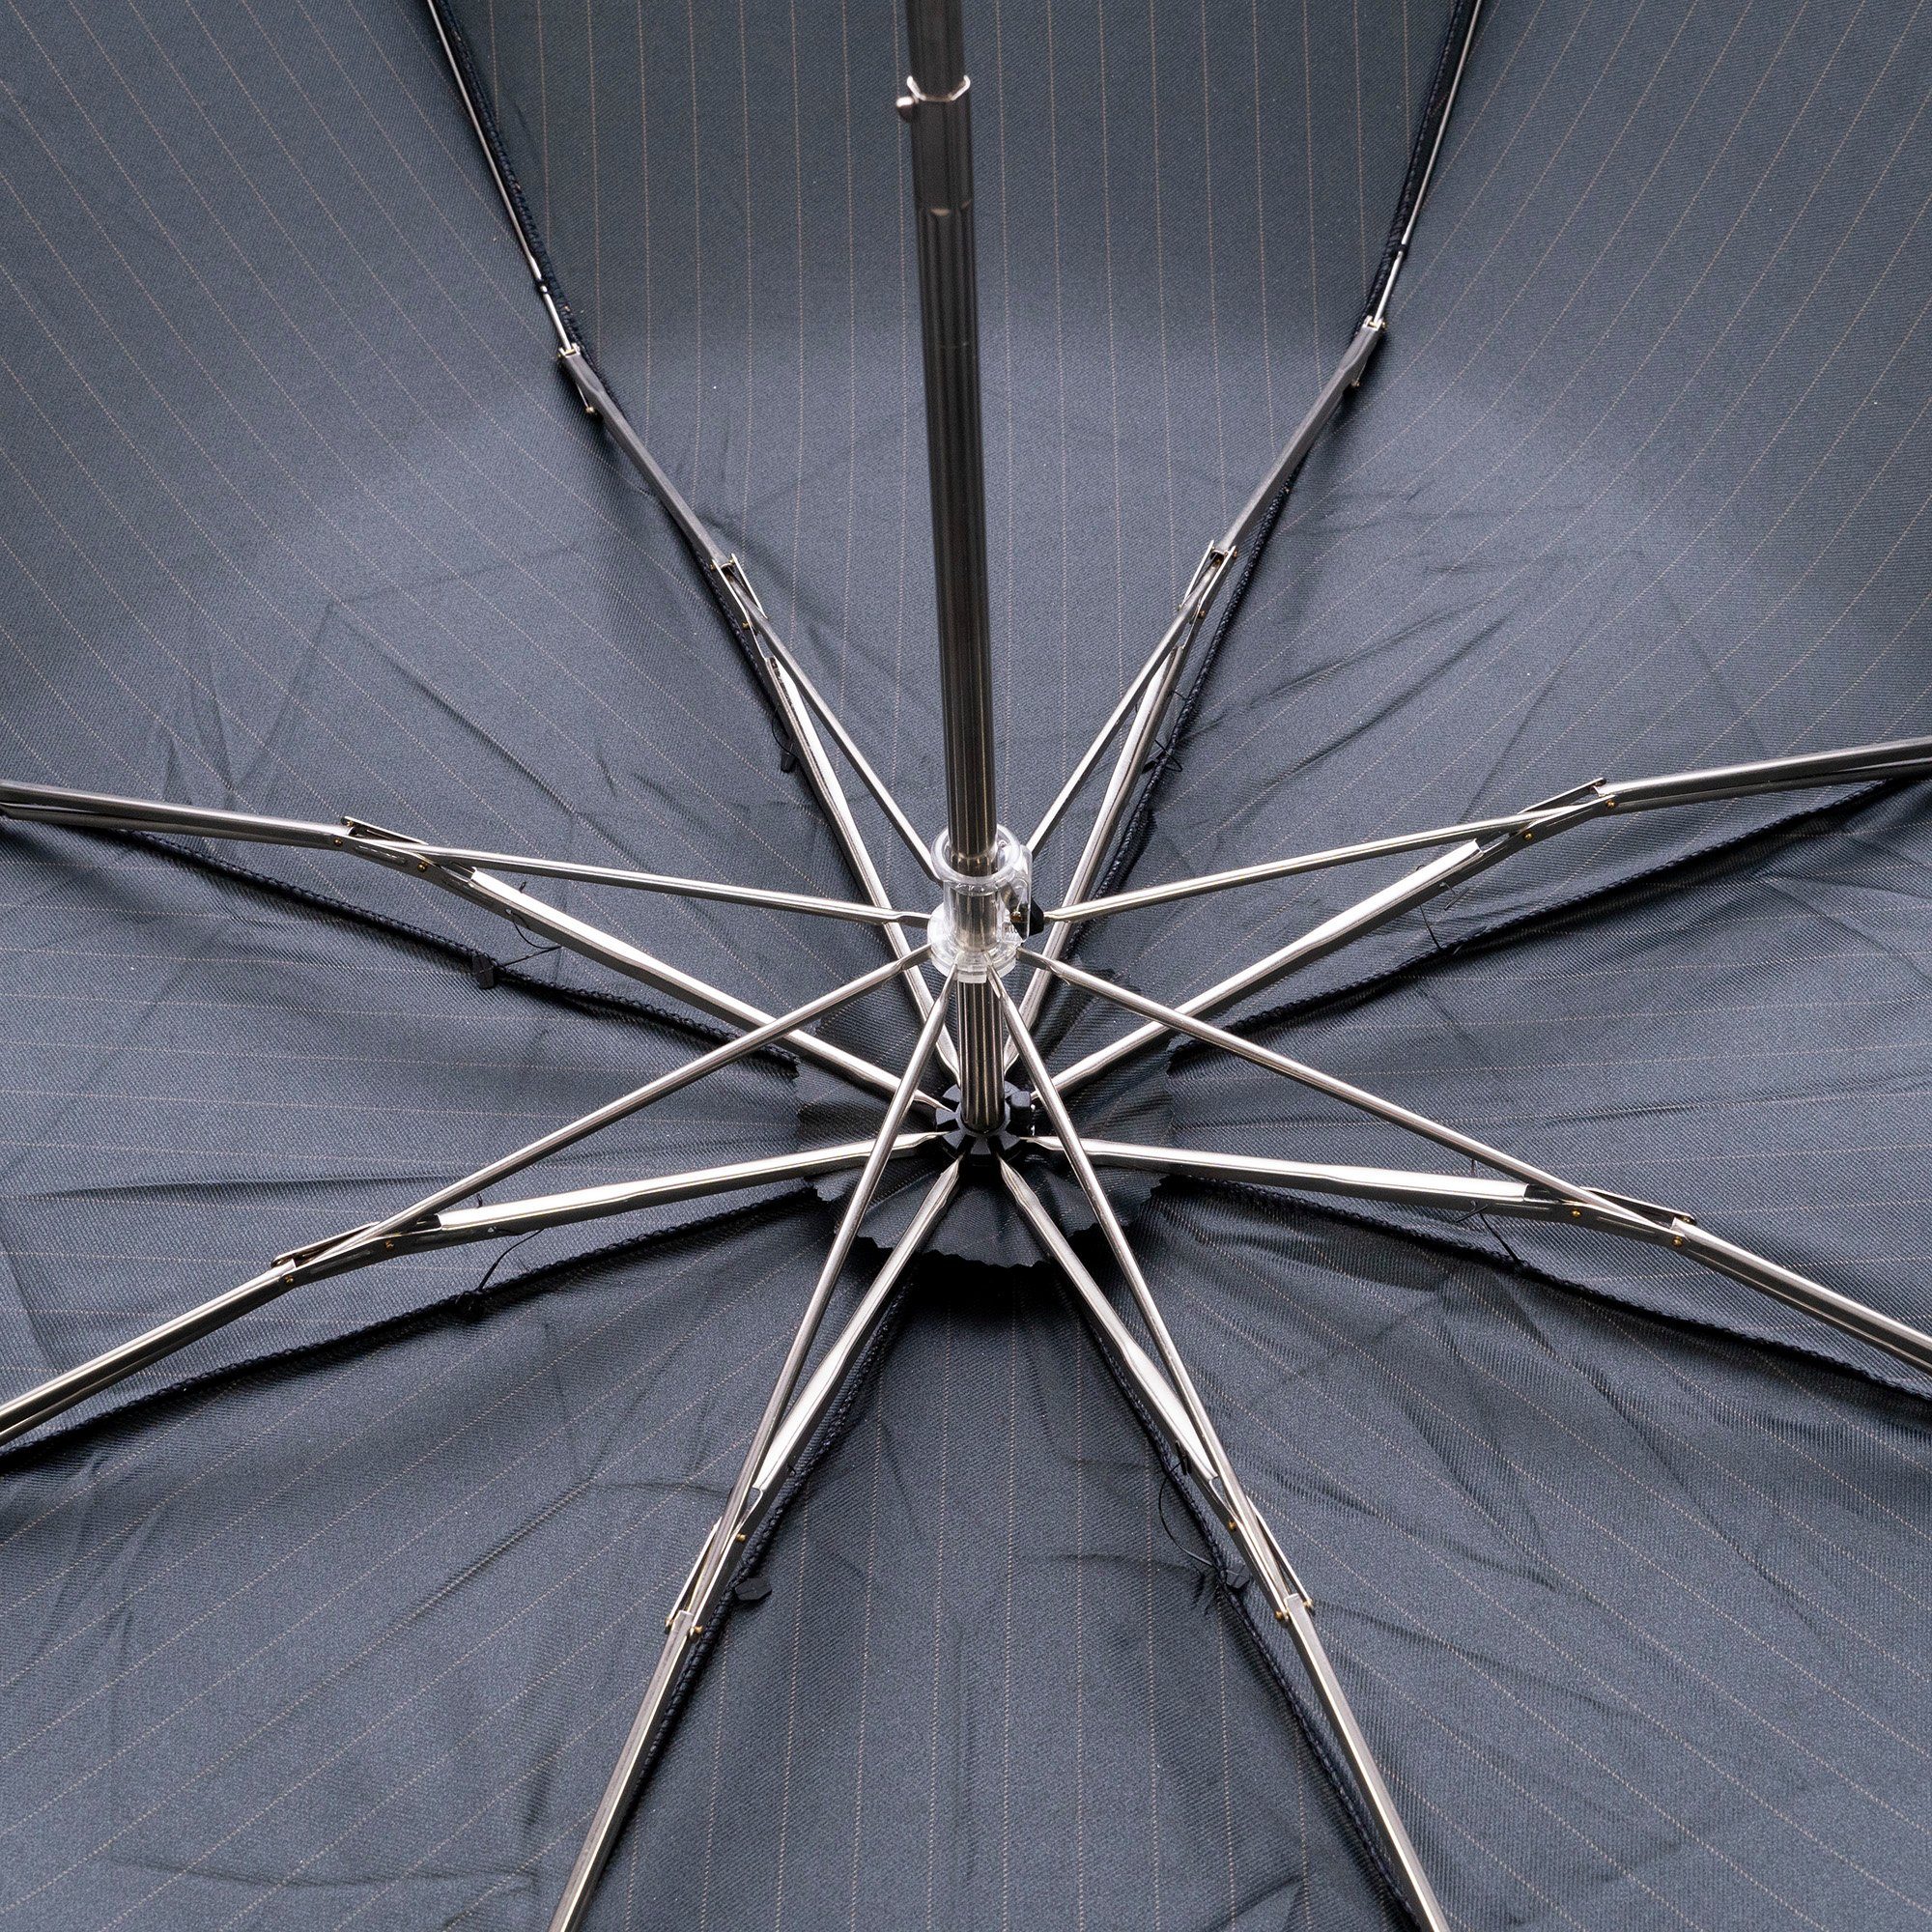 Francesco Maglia Holzgriff, Grün Taschenregenschirm, Handmade Italy in gestreift, Luxus-Regenschirm